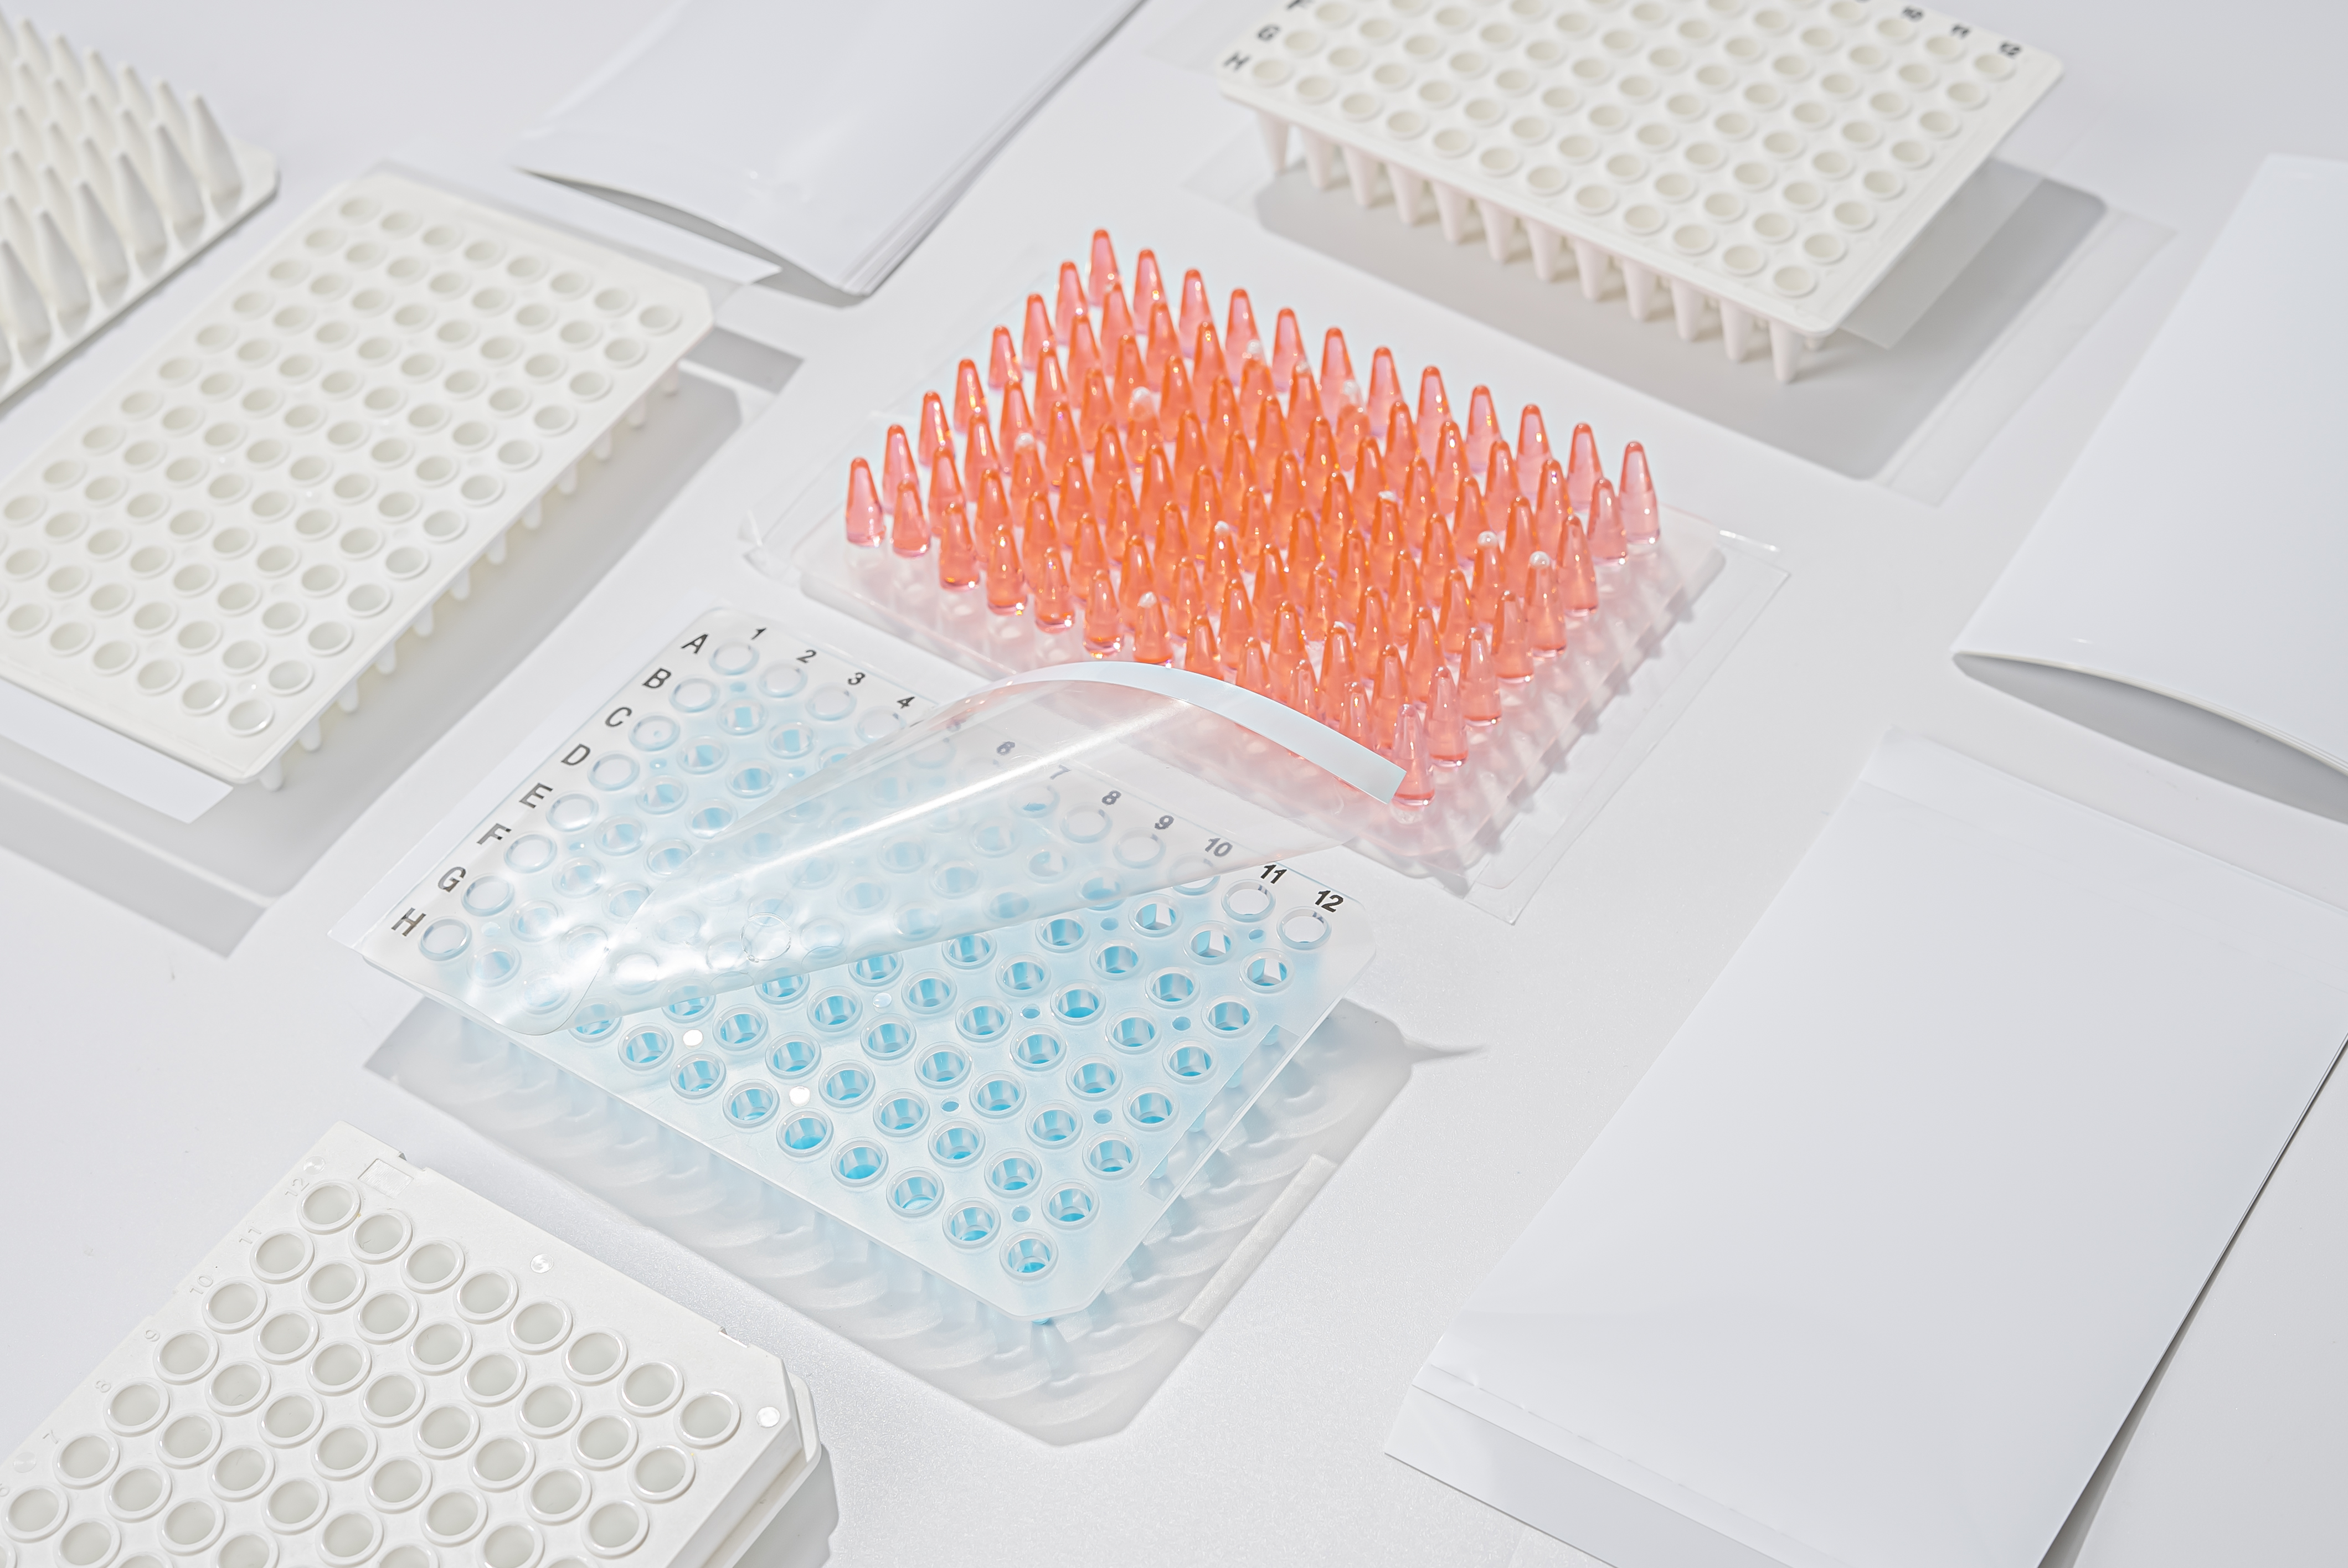 Consejos simples sobre cómo mantenerse alejado de la contaminación durante la PCR